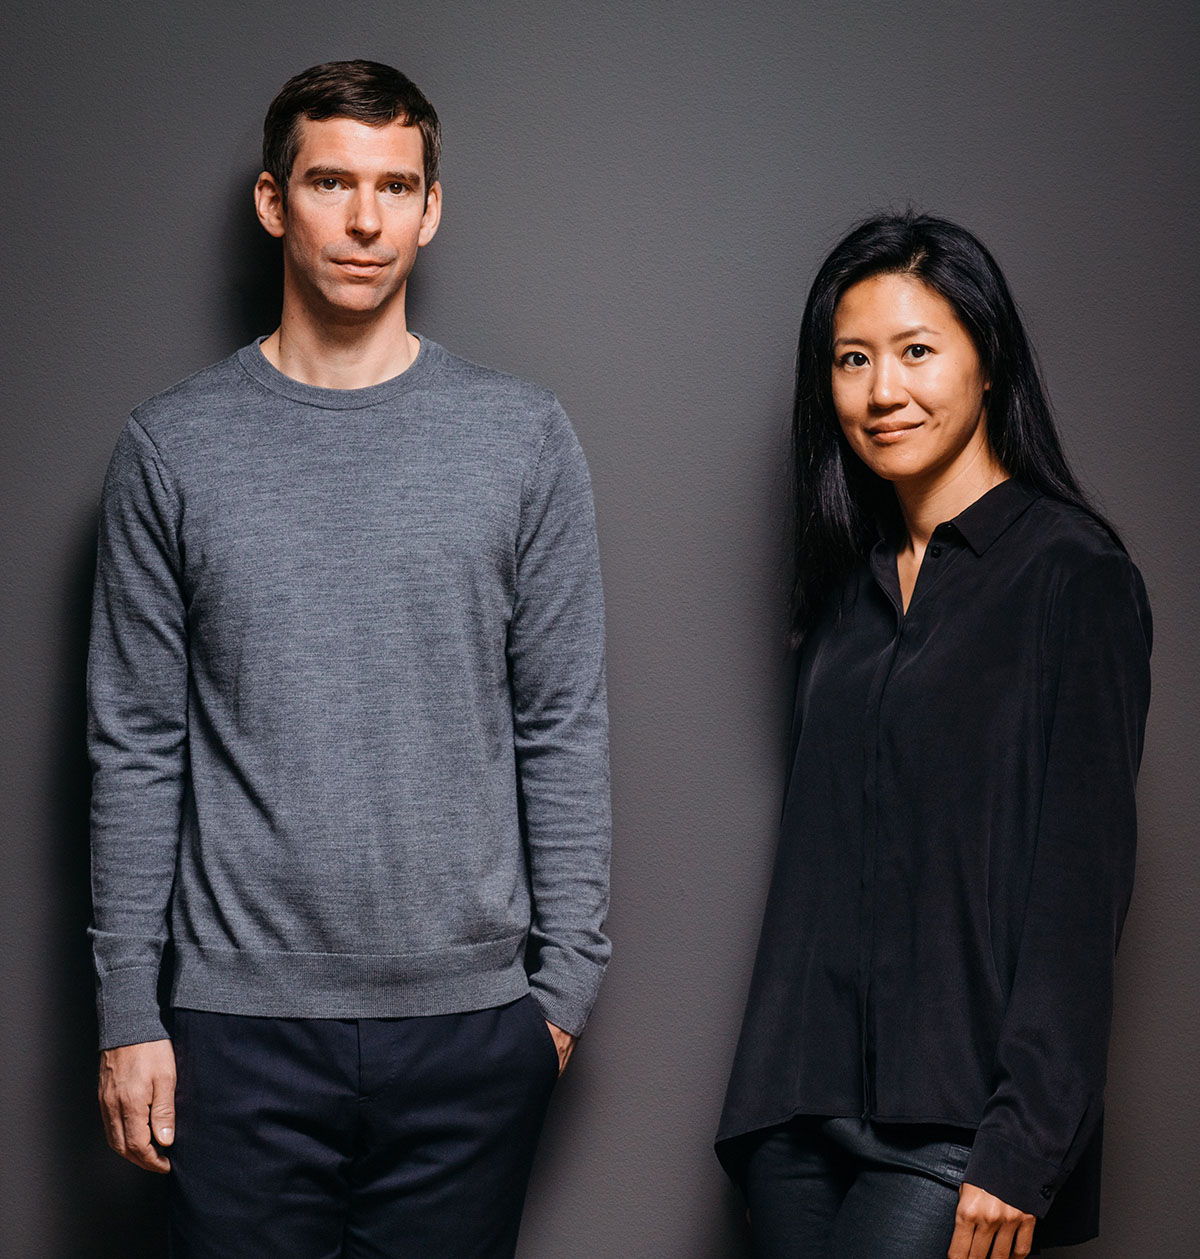 Joris Vanbriel & Vanessa Yuan, founders ecoBirdy
Photographer: Kris Van Exel